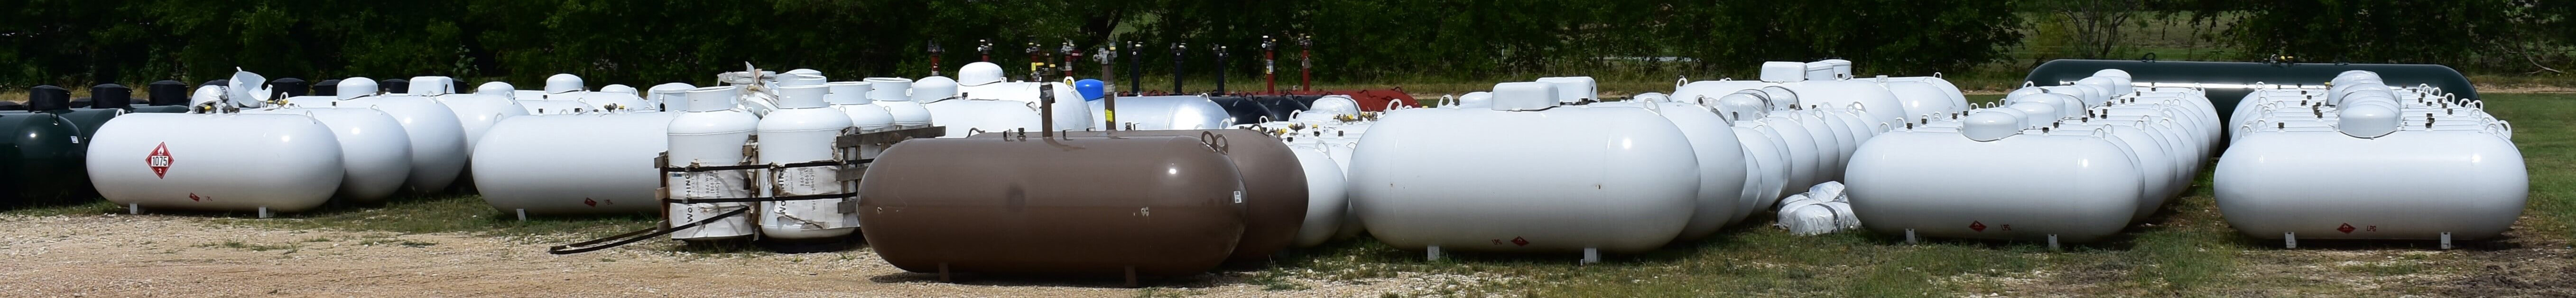 new above ground and underground propane tanks